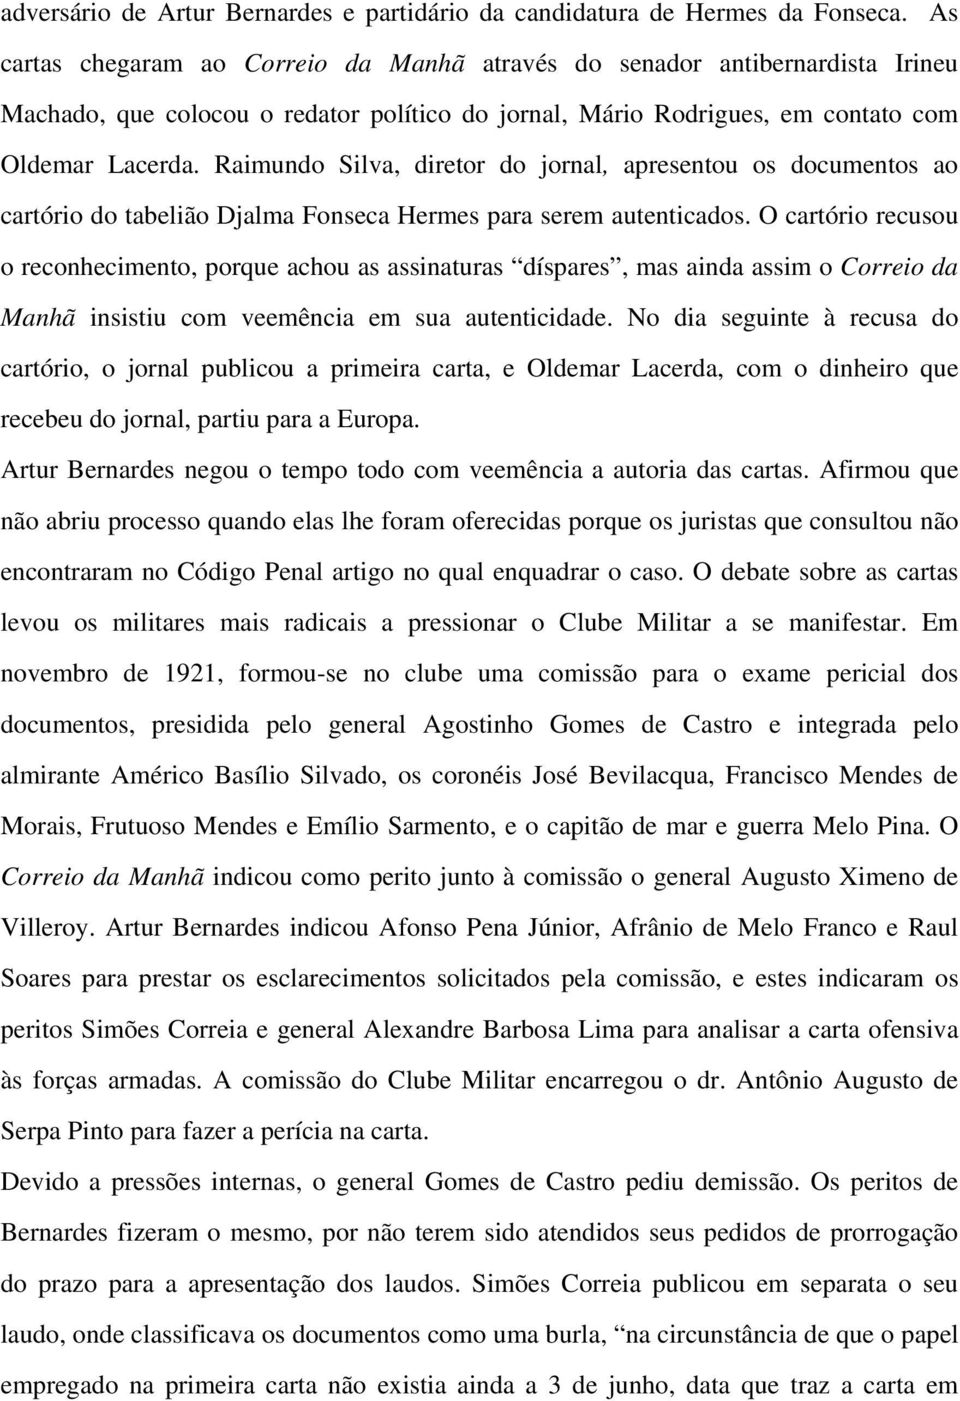 Raimundo Silva, diretor do jornal, apresentou os documentos ao cartório do tabelião Djalma Fonseca Hermes para serem autenticados.